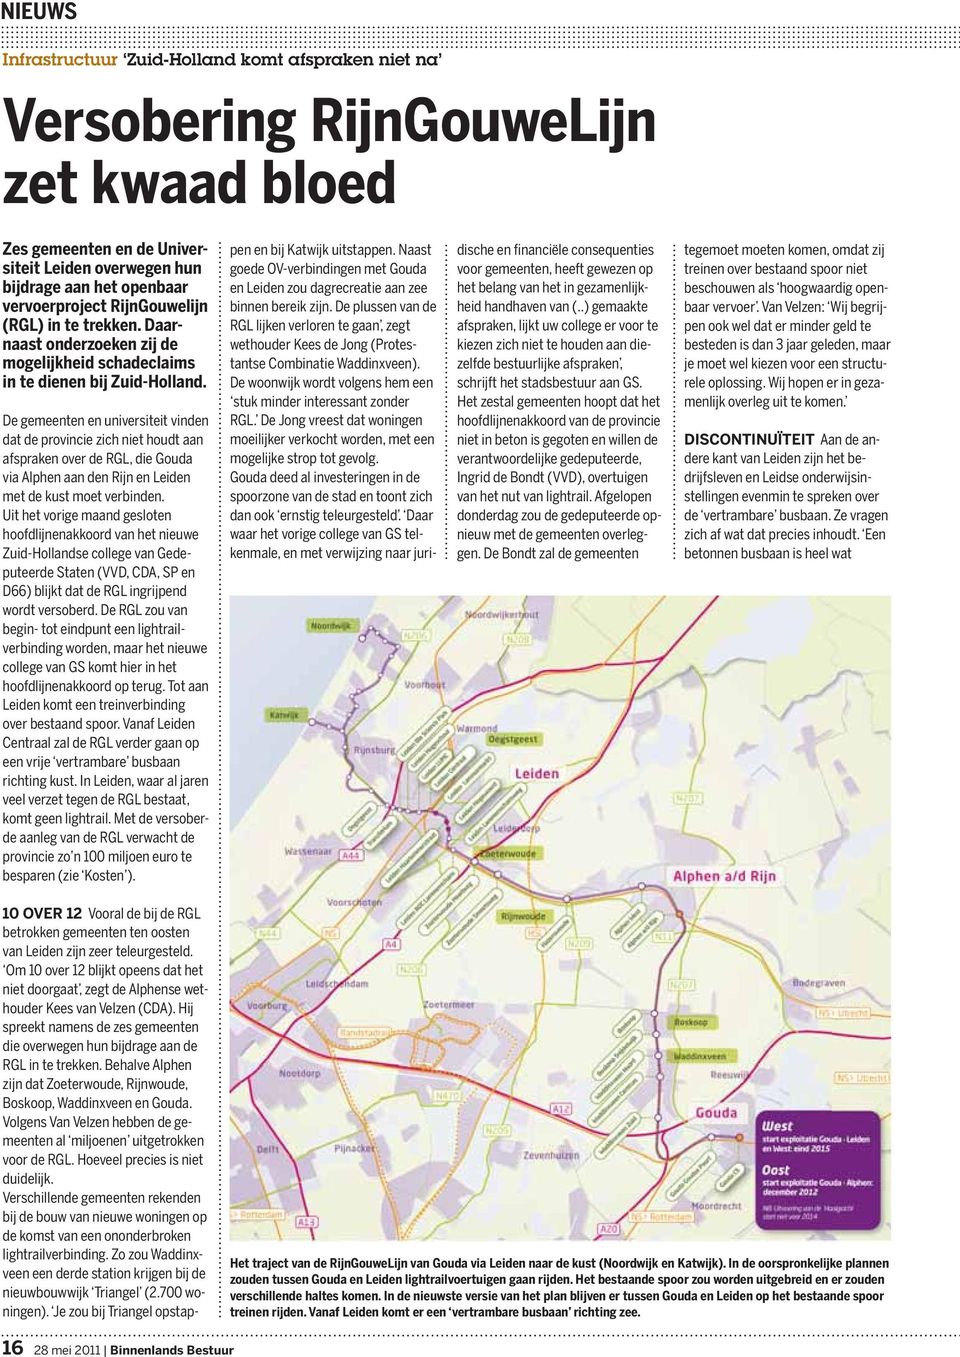 De gemeenten en universiteit vinden dat de provincie zich niet houdt aan afspraken over de RGL, die Gouda via Alphen aan den Rijn en Leiden met de kust moet verbinden.